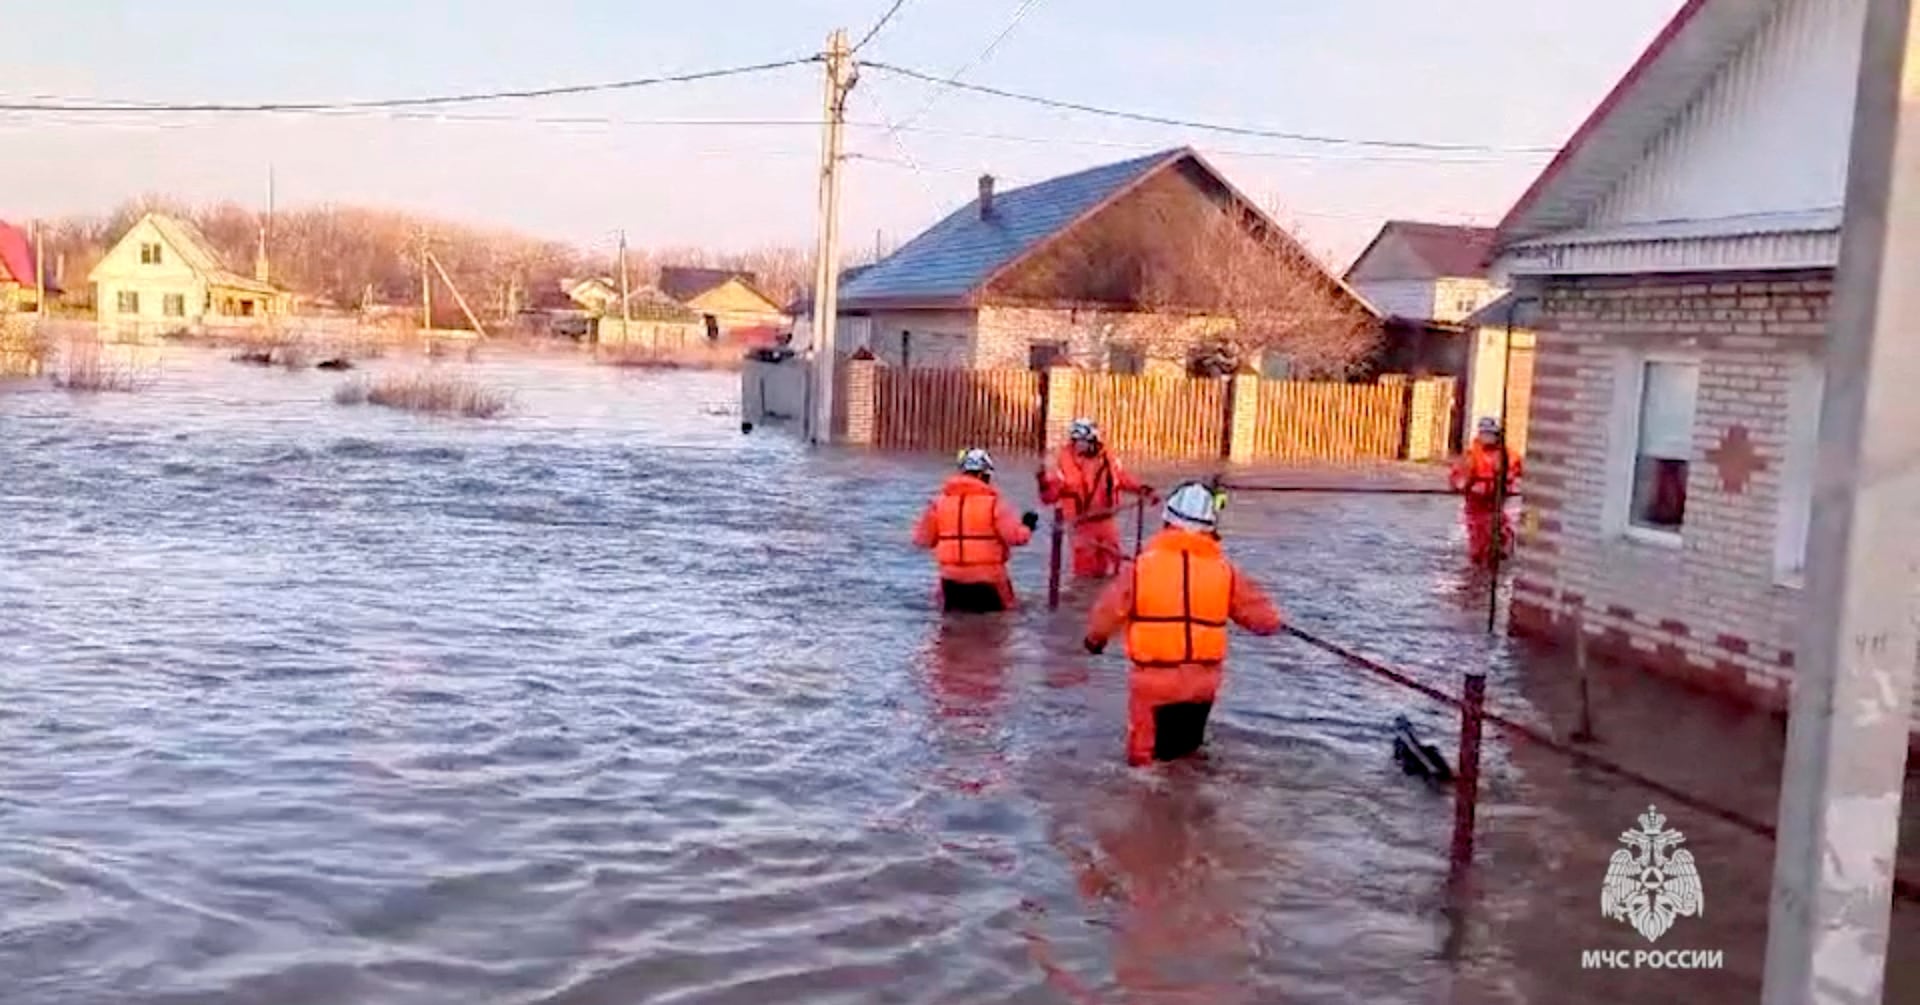 ロシア大規模洪水、一部被災者が地元当局の対応の鈍さに抗議